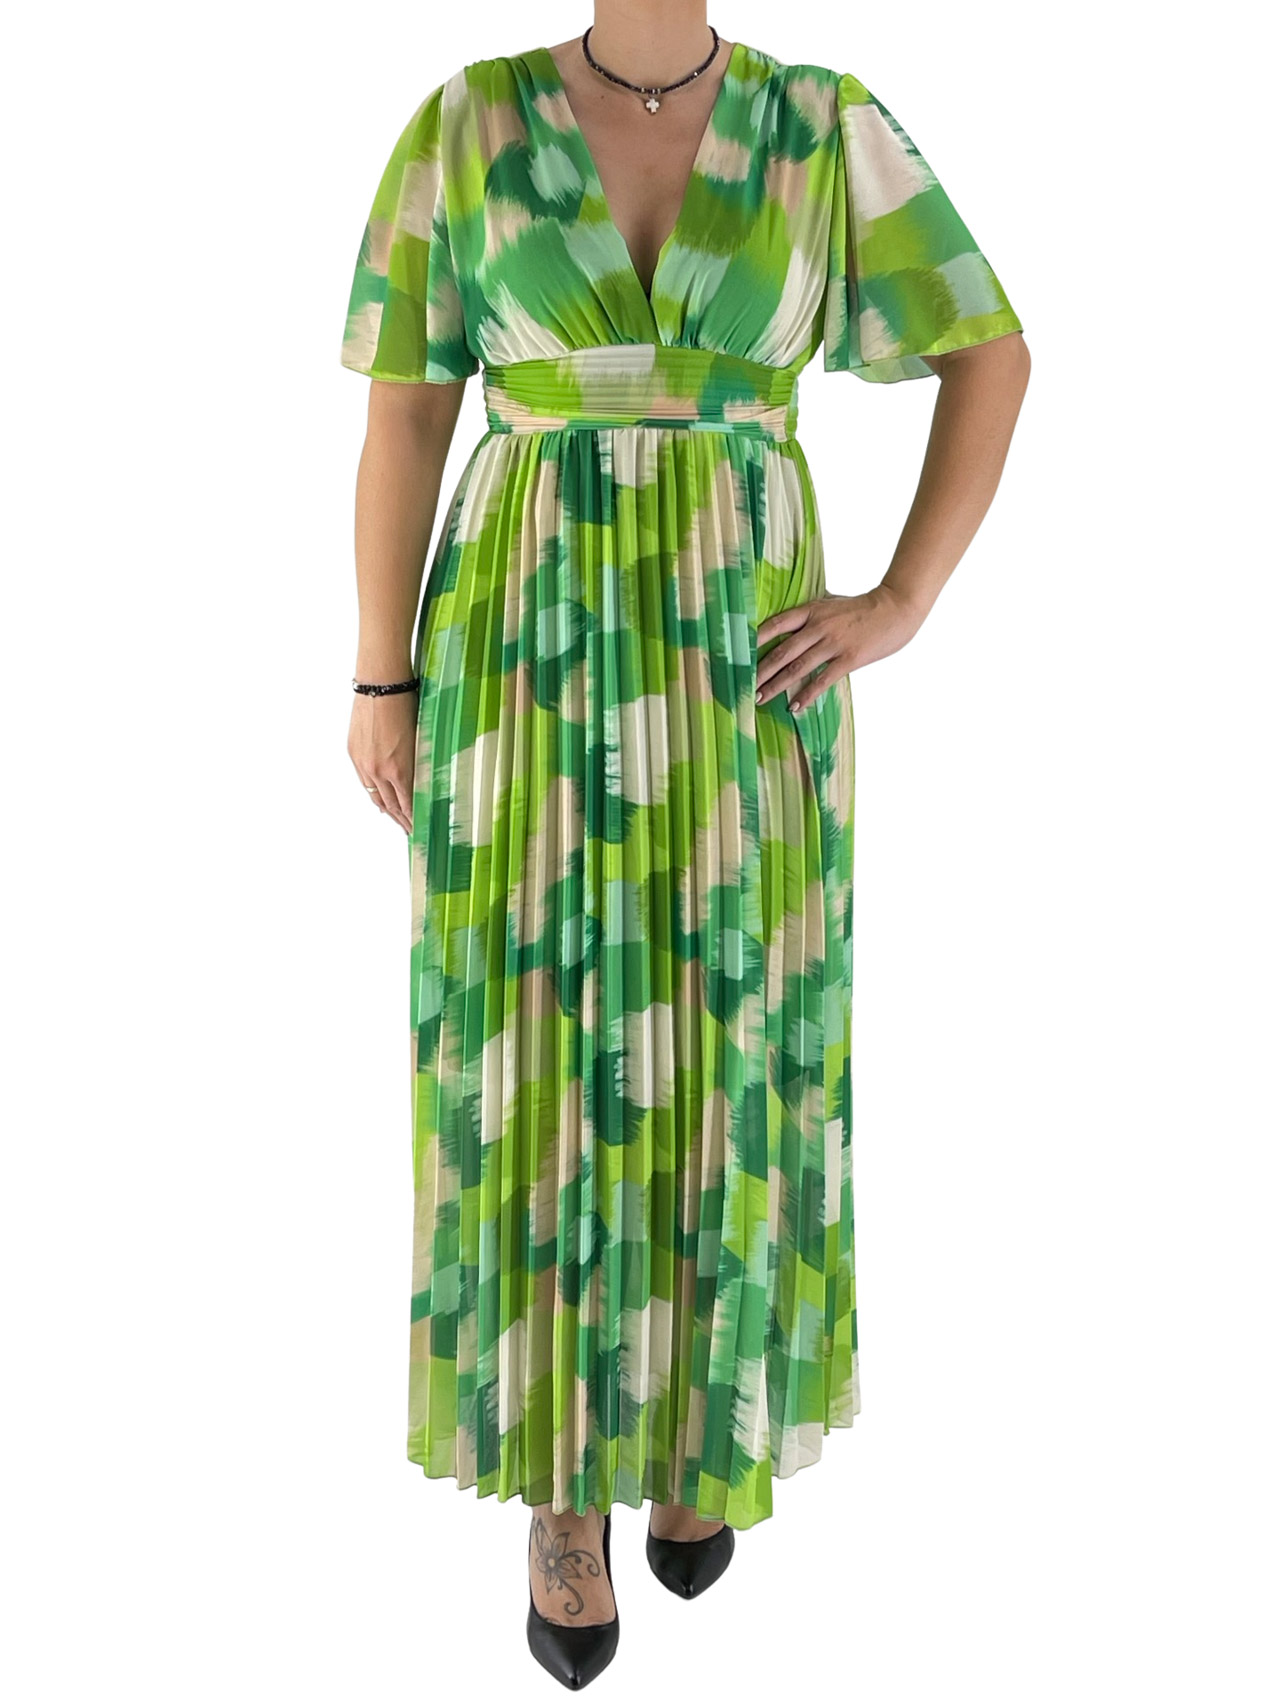 Φόρεμα εμπριμέ πλισέ κωδ. 10199 μπροστινή όψη- πράσινο